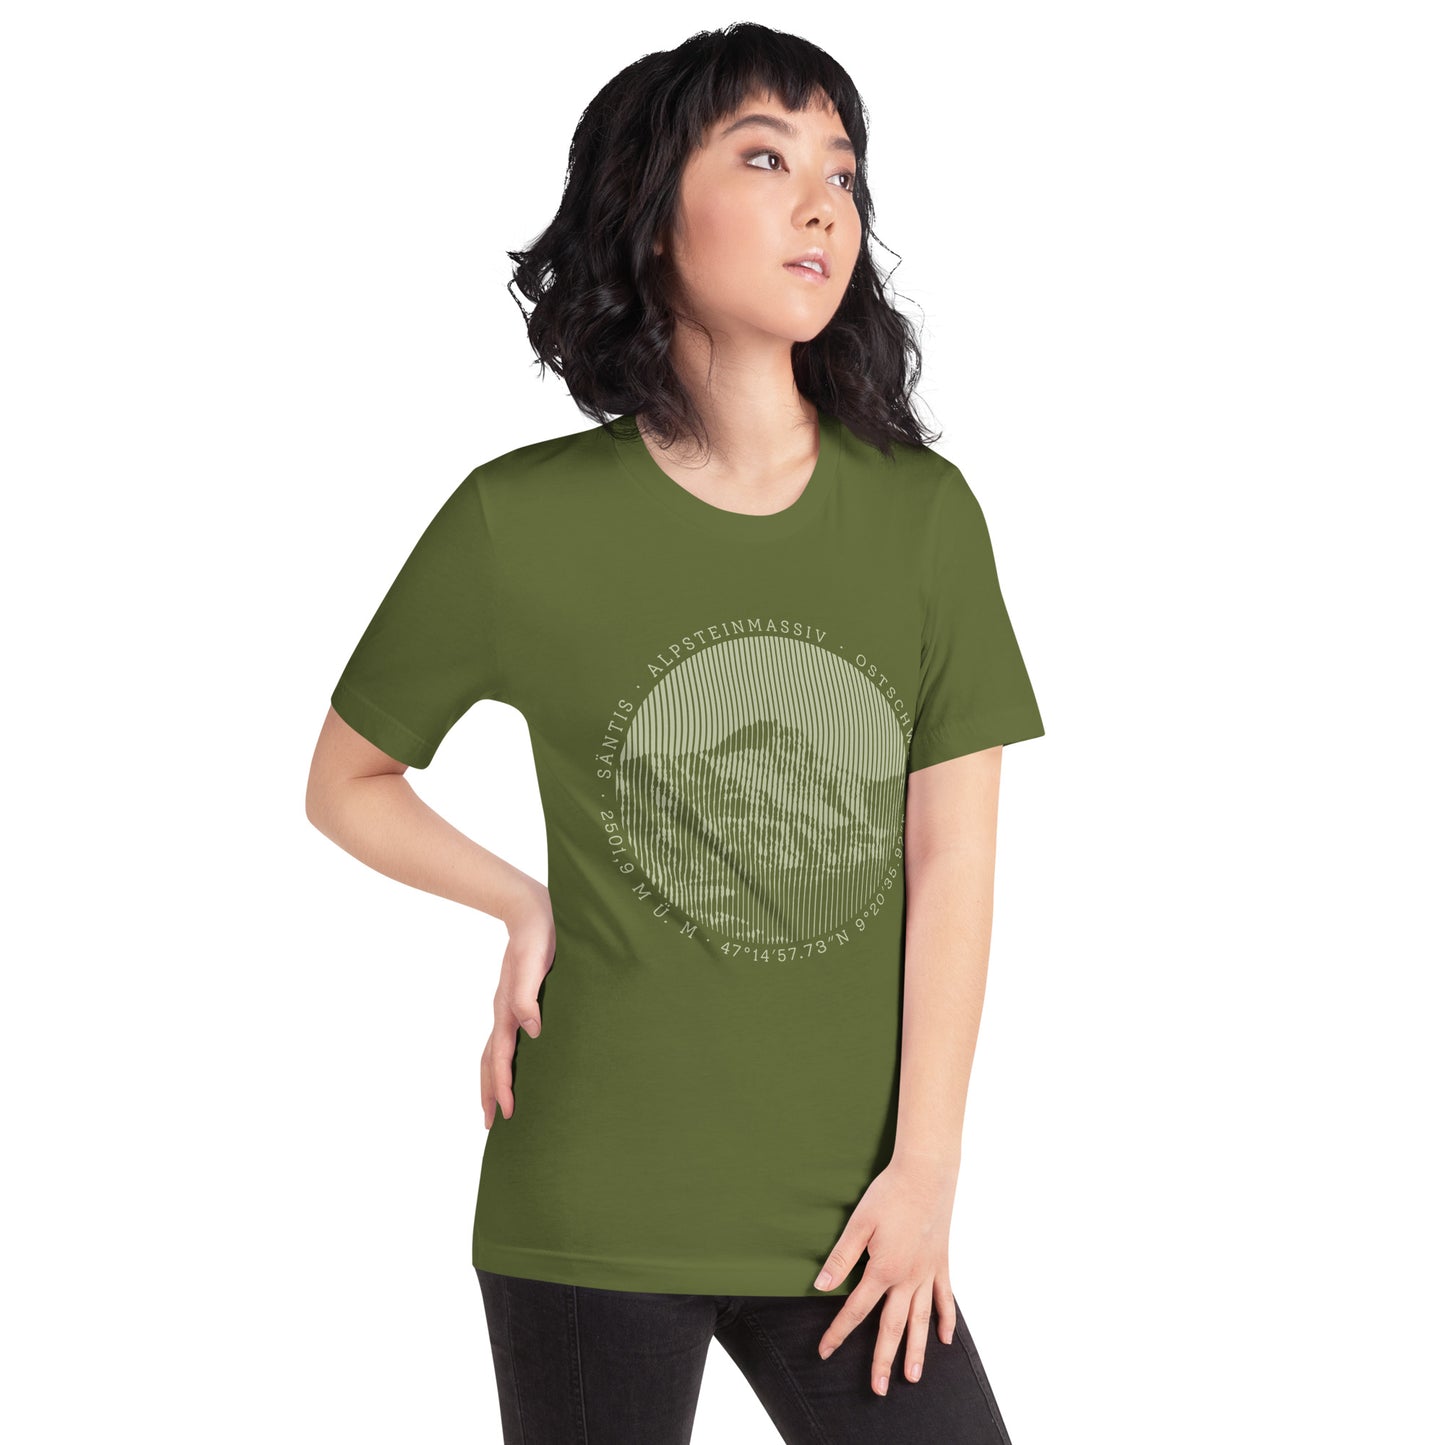 Diese Bergfreundin trägt ein olivgrünes Damen T-Shirt von Vallada mit einem Aufdruck des Säntis-Gipfels. Damit drückt sie ihre Liebe zu den Alpen und den Appenzeller Alpen im Besonderen aus.